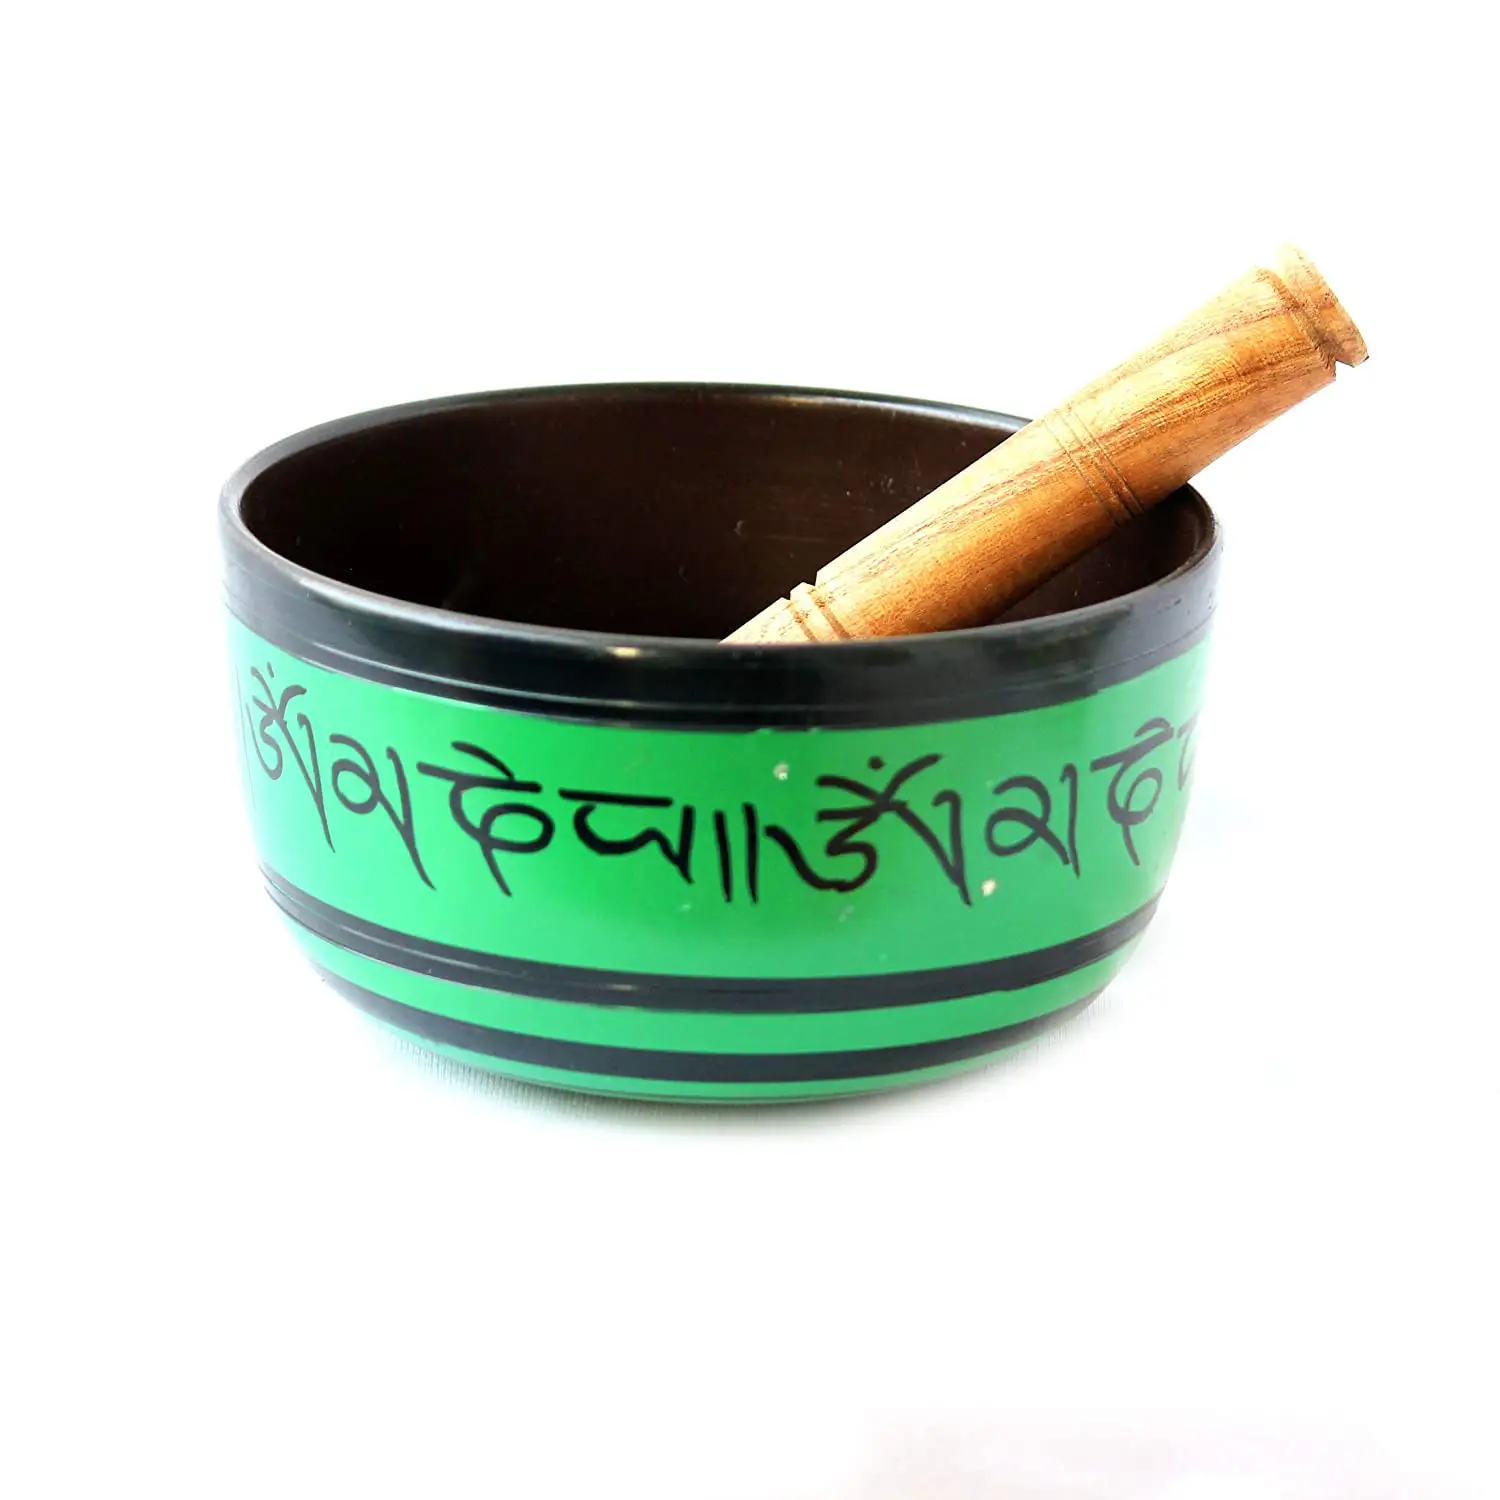 Últimas Ressonância Cura & Meditação Yoga Bowl com Mallet Hot Sale Tibetan Yoga Meditação Singing Bowl para o som da Índia